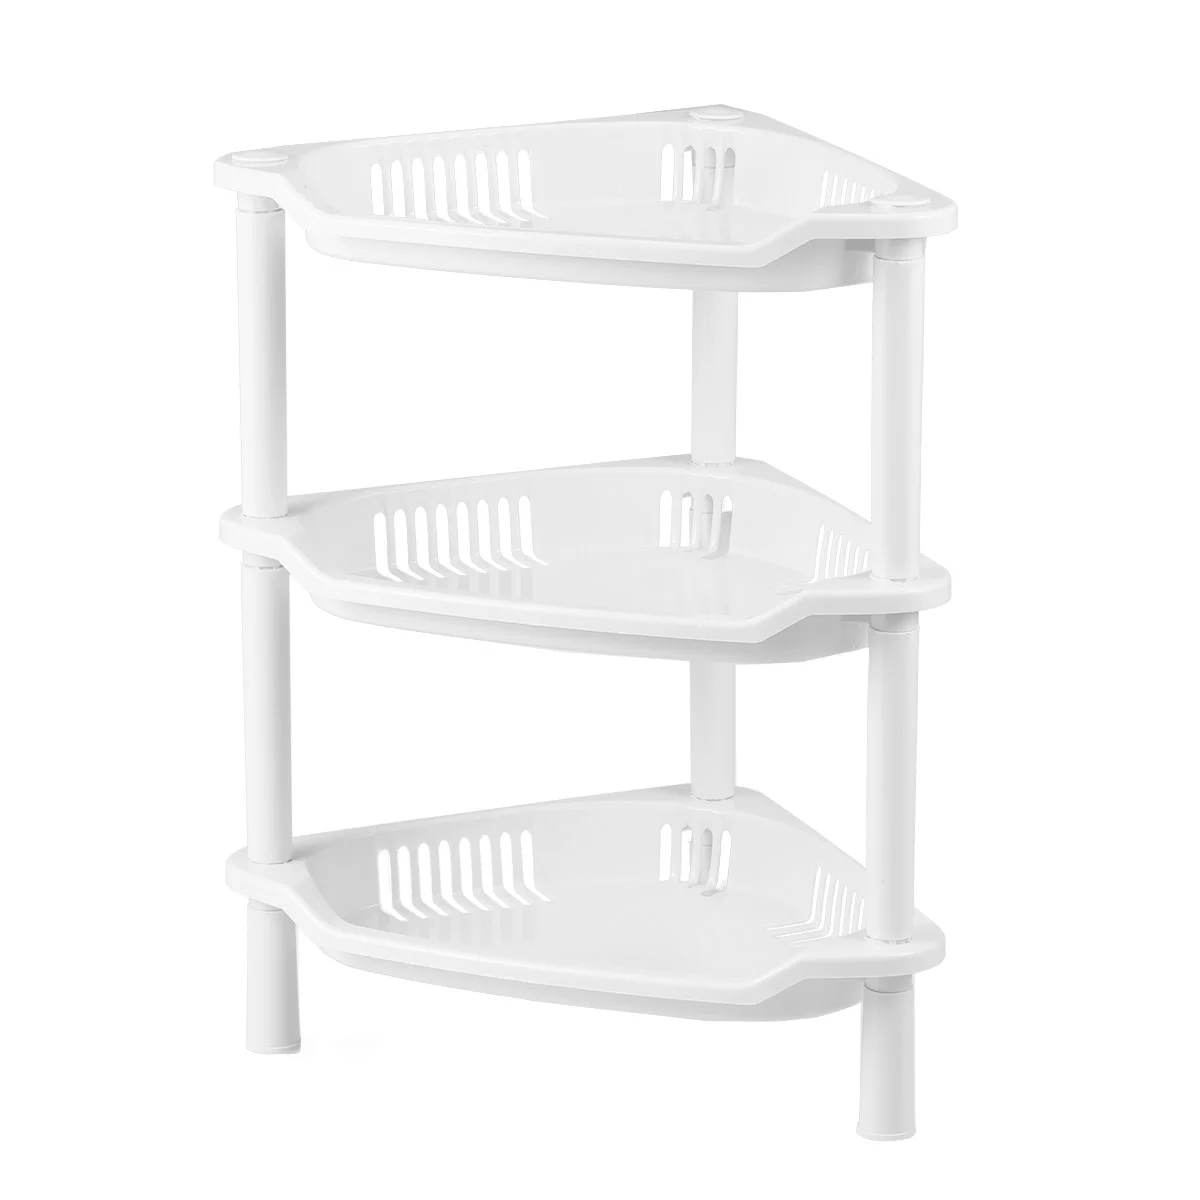 

3 Layer Hamper Basket Corner Shelf Organizer Desk Stand Rack Bathroom Shelves Plastic Basket